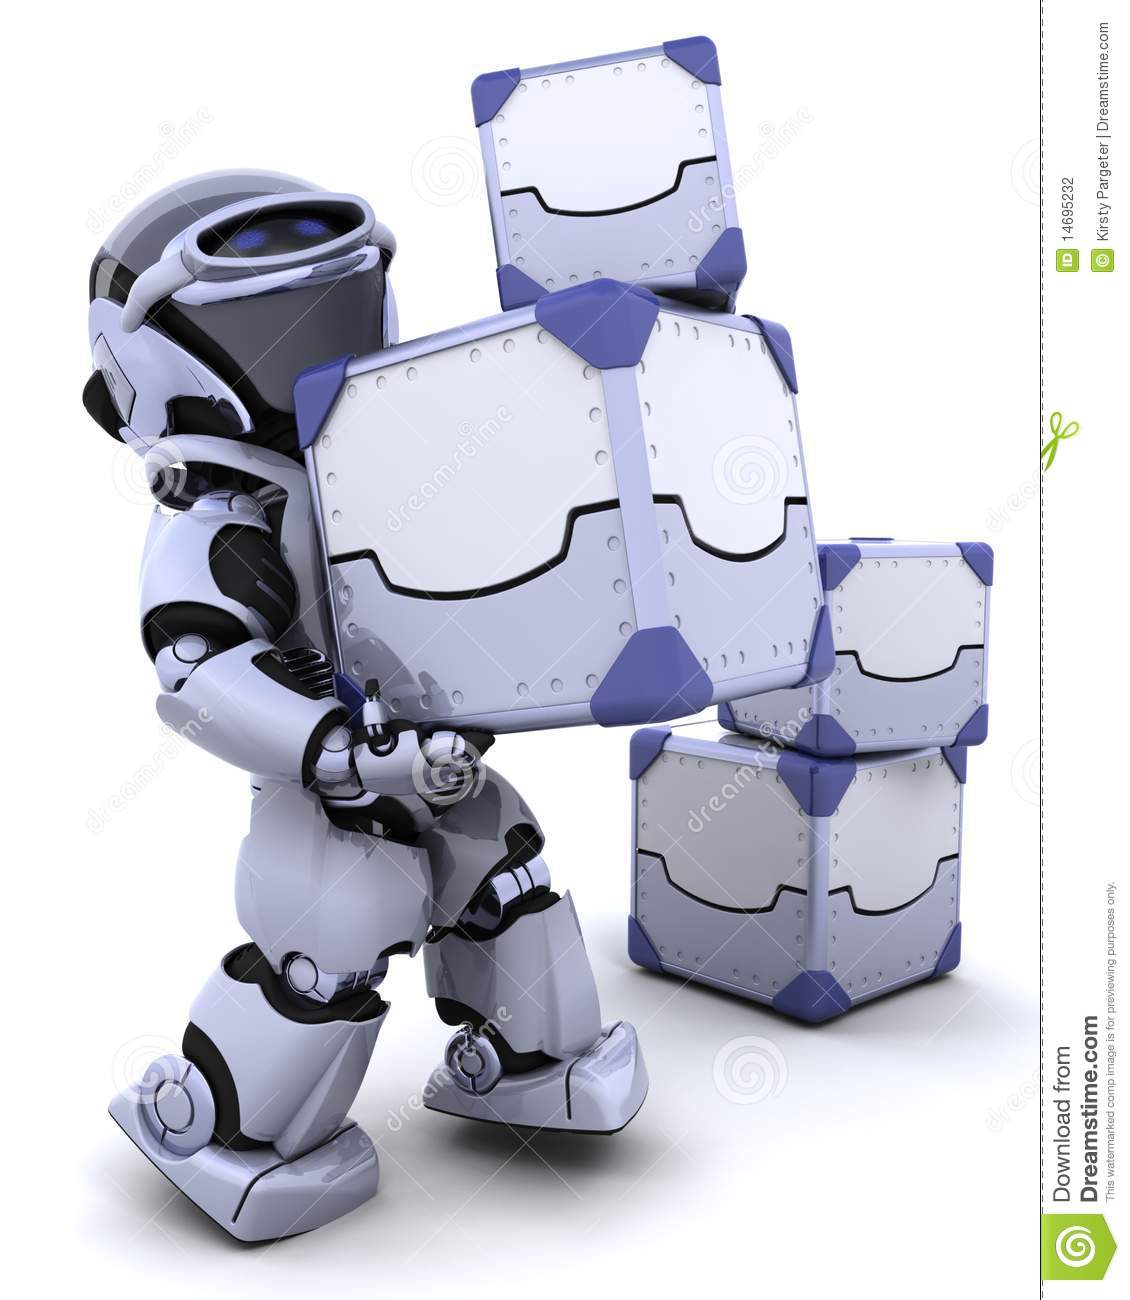 Cute Box Person   Bomrobot